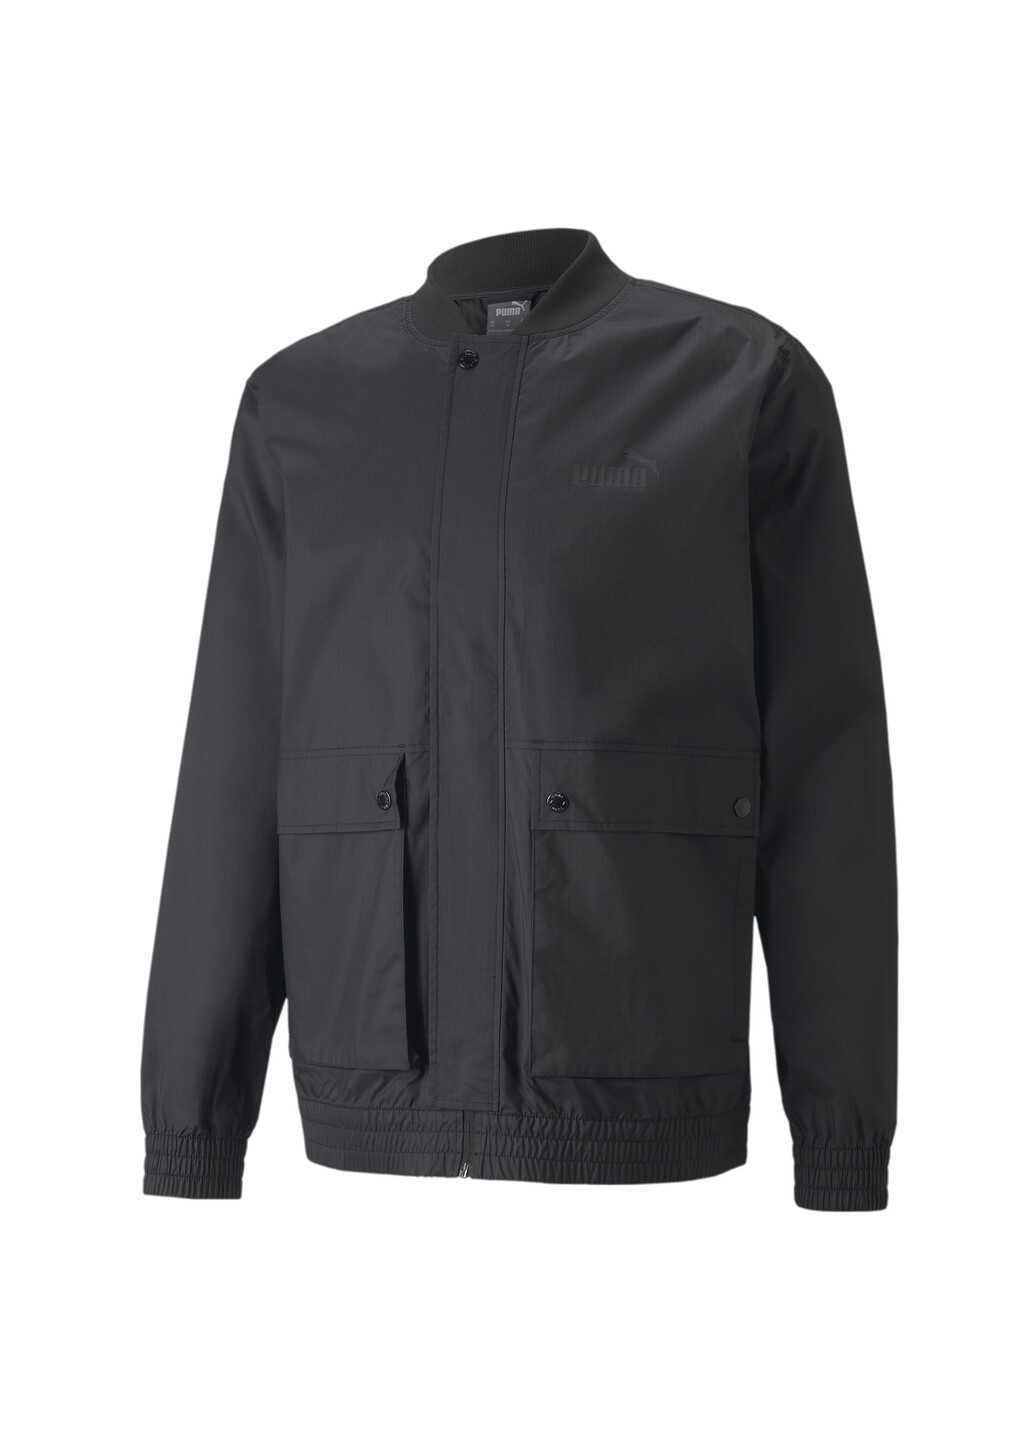 Черная демисезонная куртка men's bomber jacket Puma